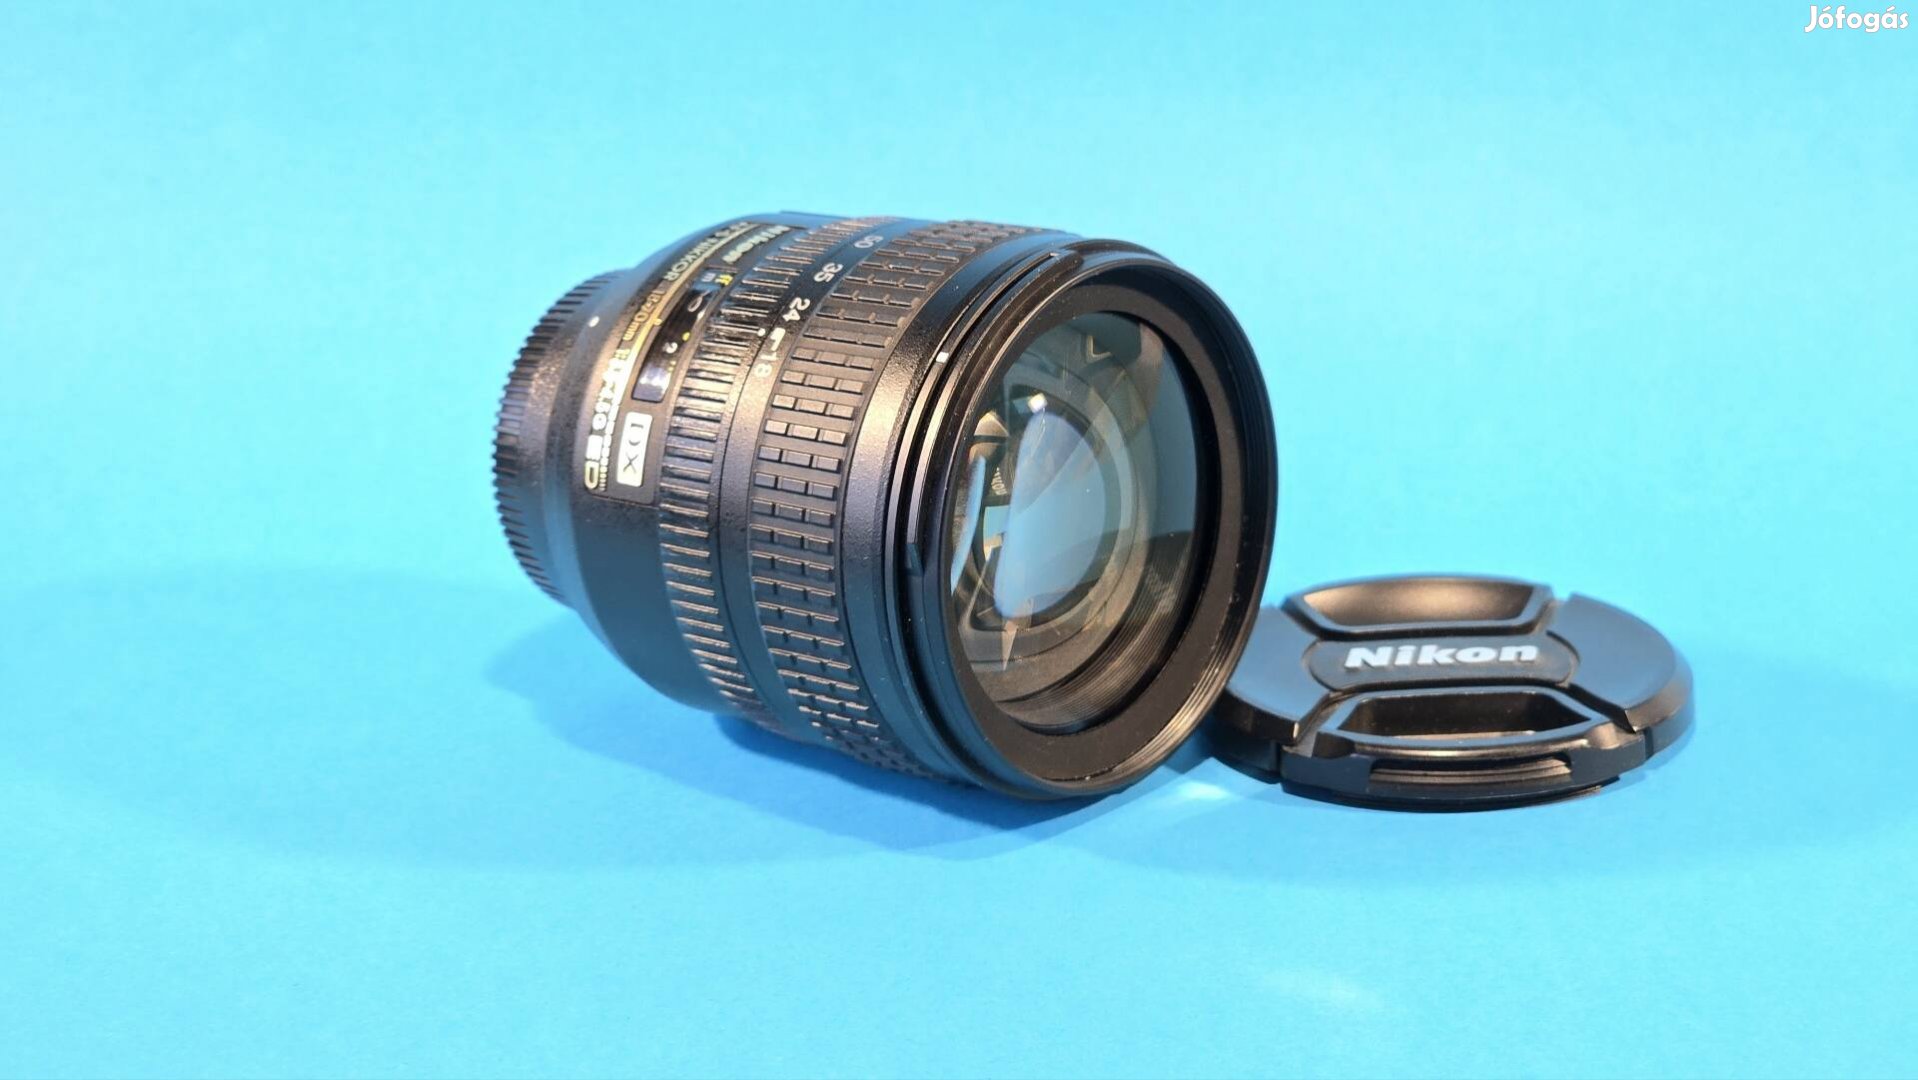 Nikon af-s nikkor 18-70mm G objektív 18-70